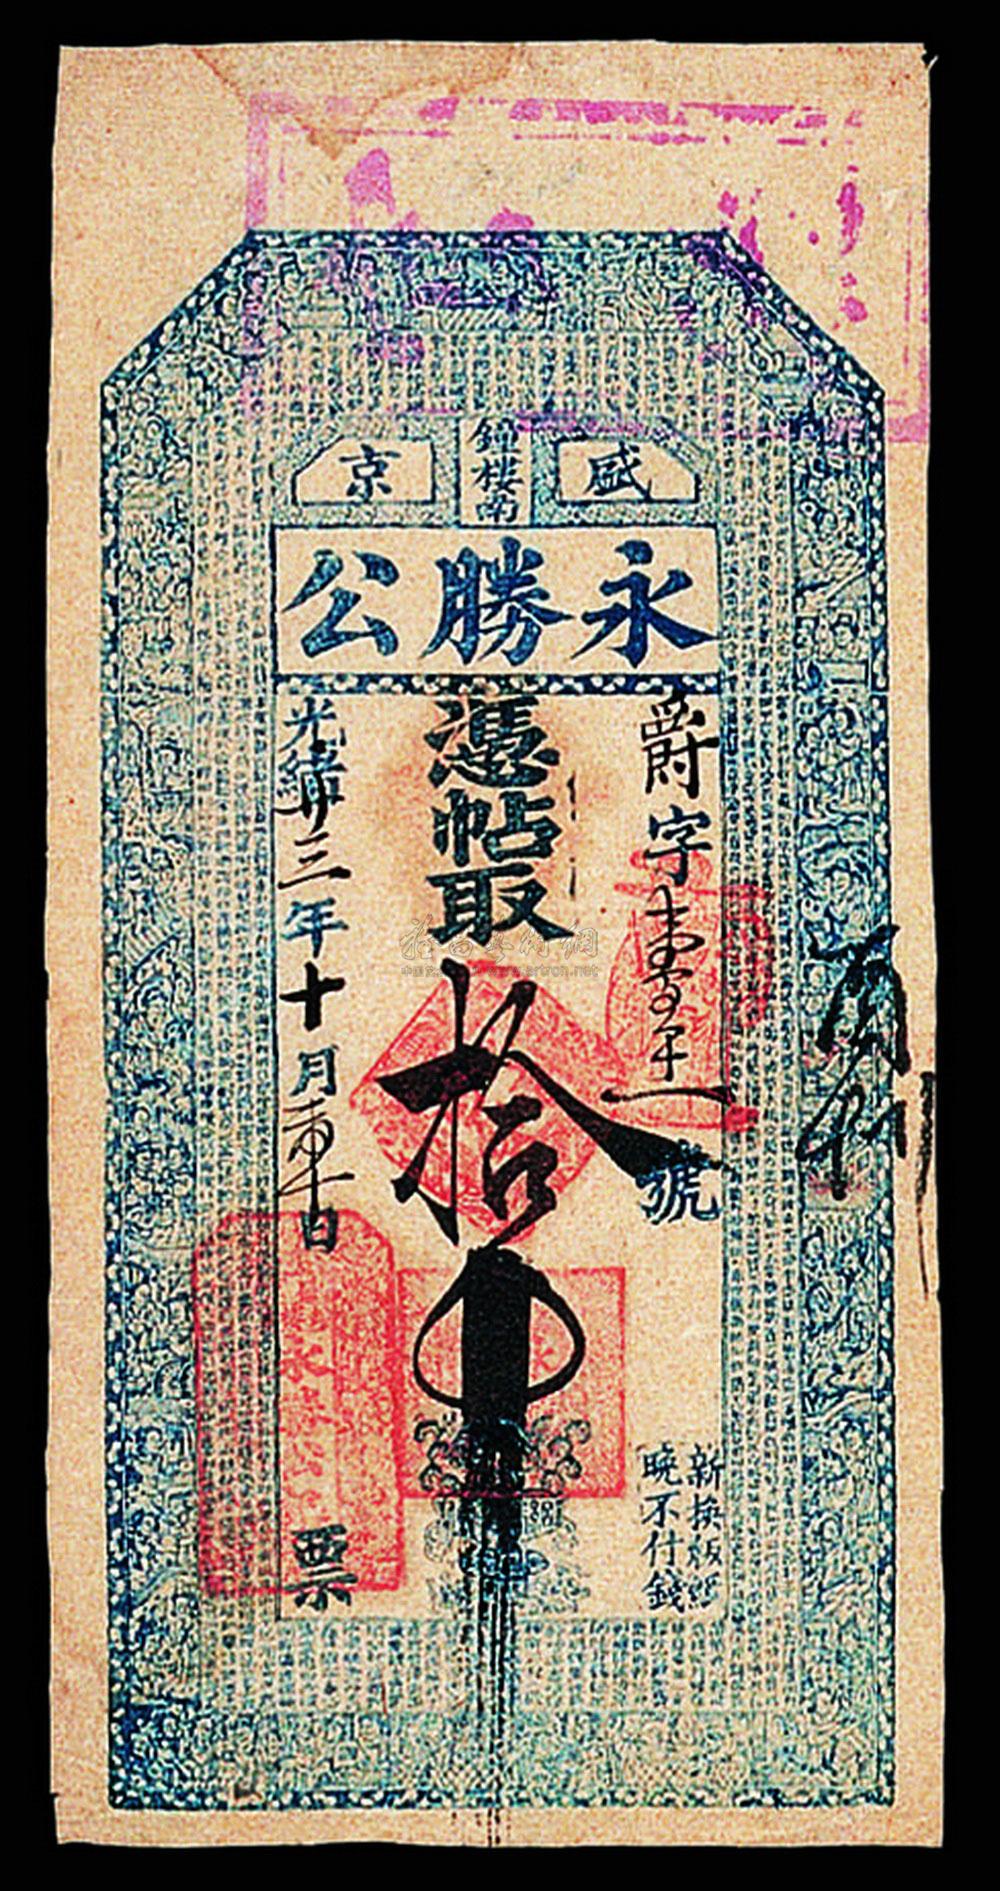 1217 光绪二十三年盛京永盛公凭票取十吊银票一枚